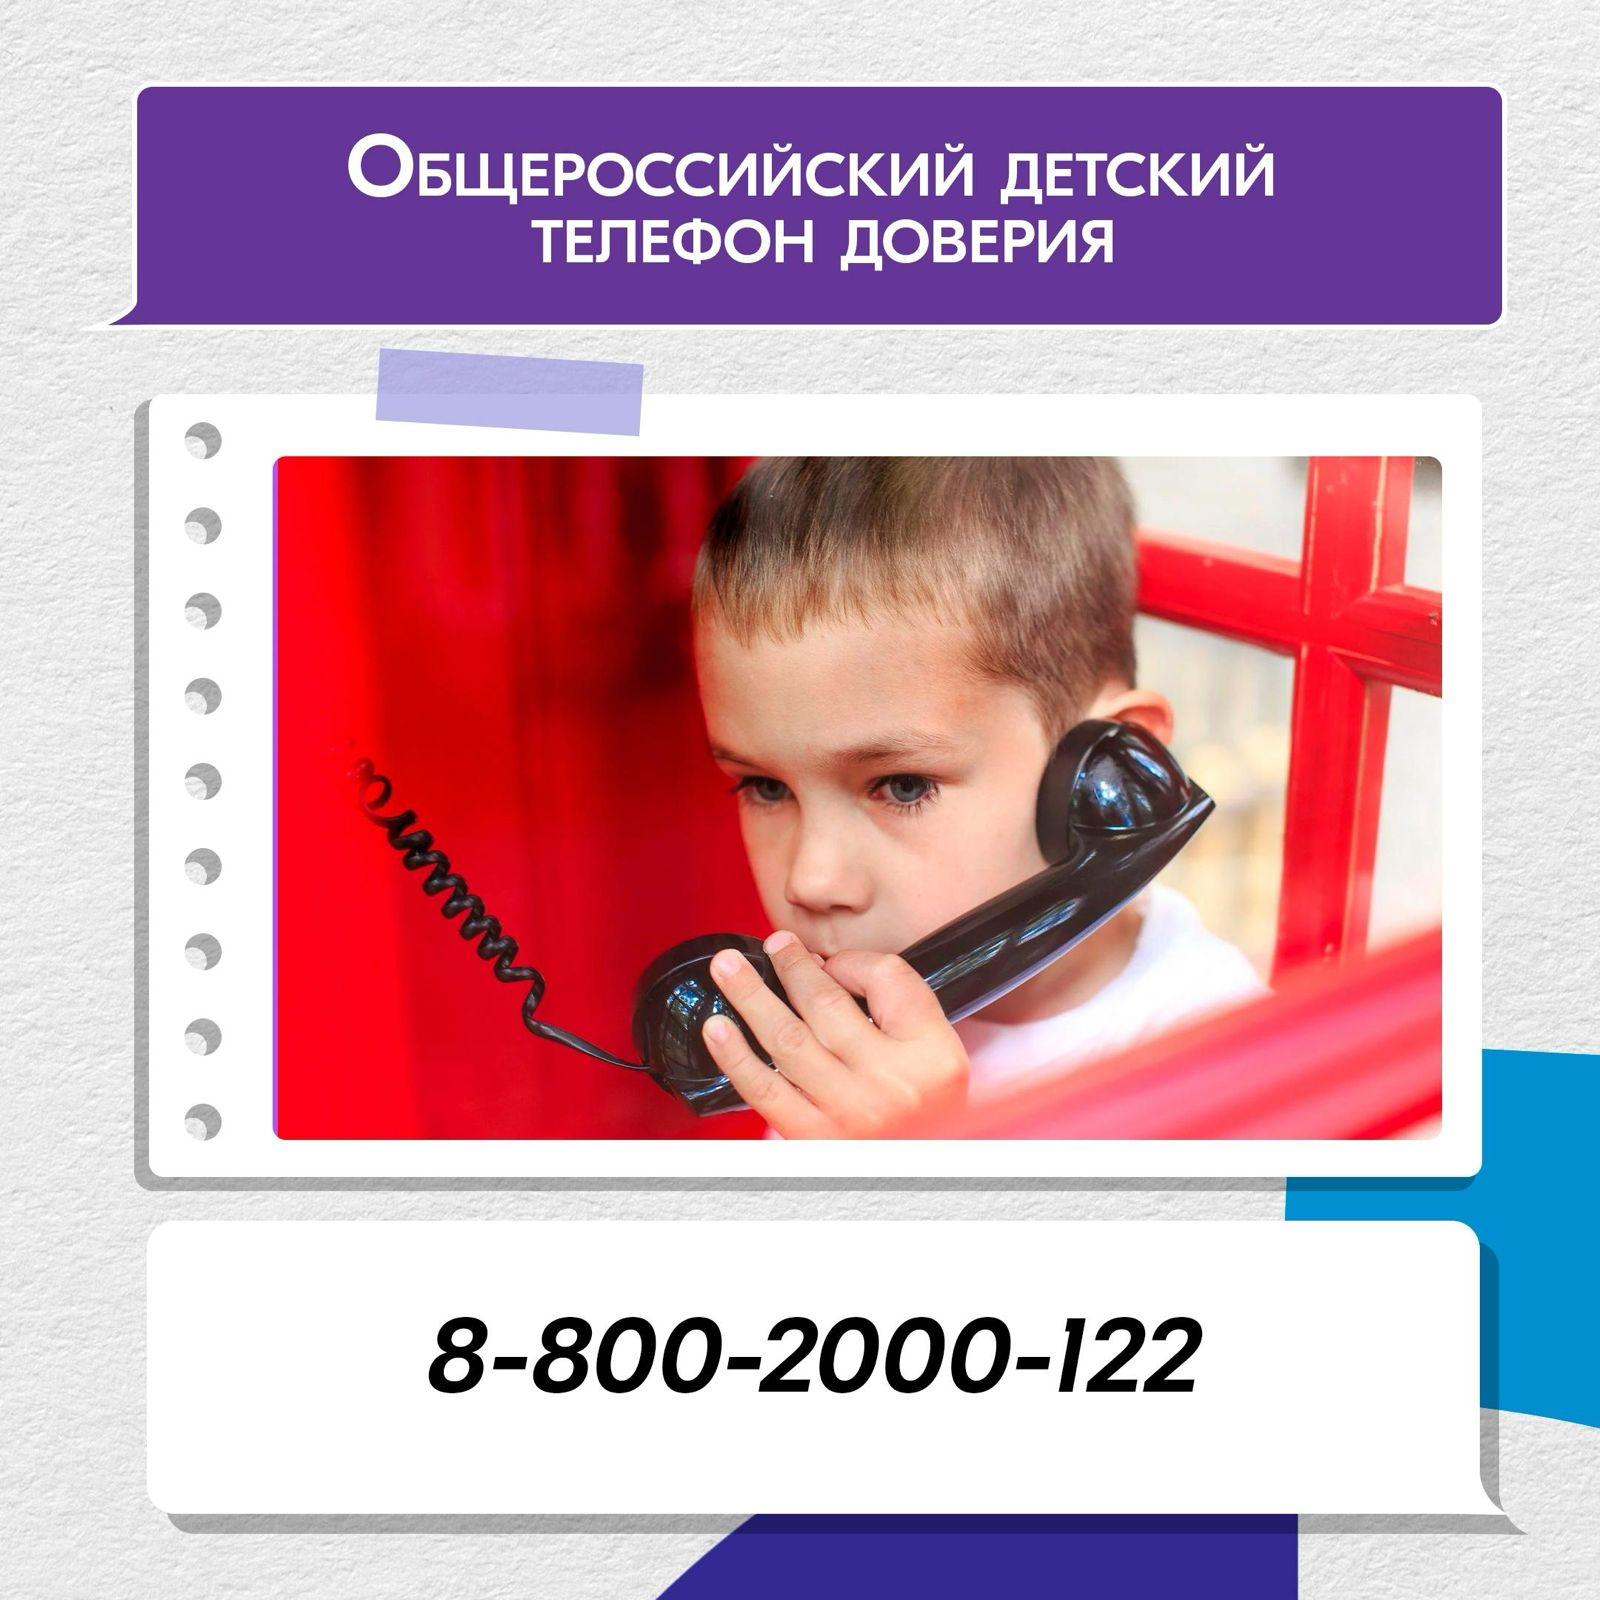 Детский телефон доверия.